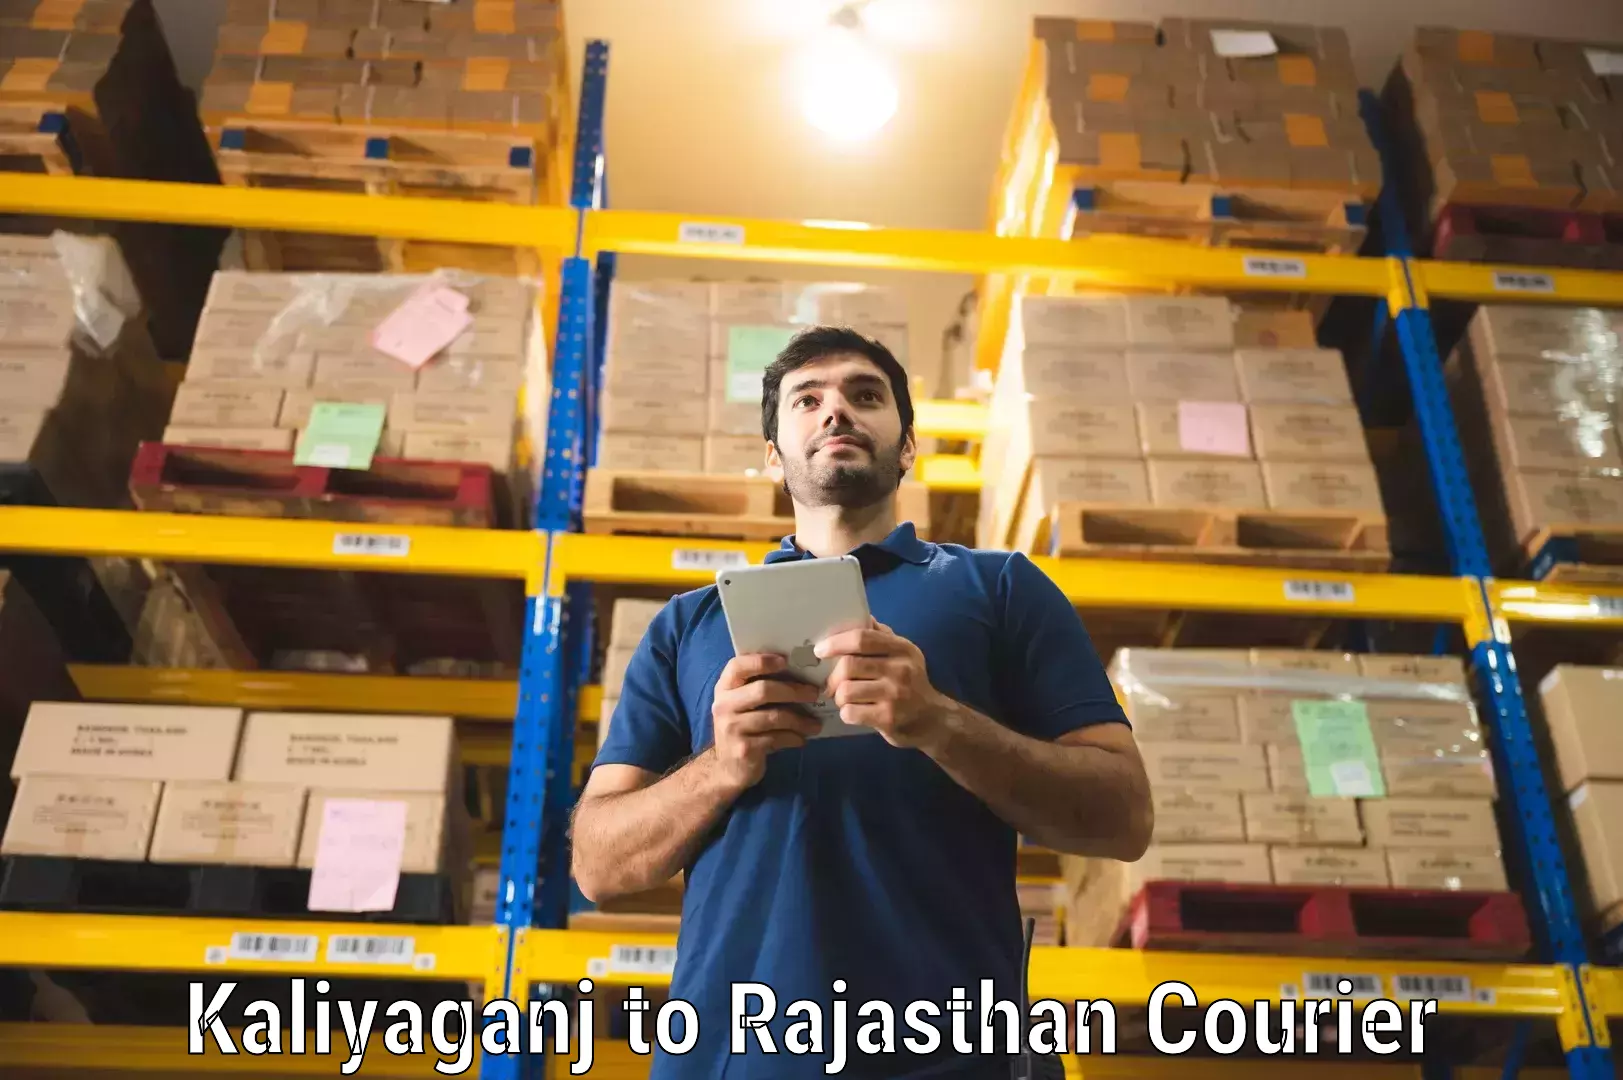 Professional courier handling Kaliyaganj to Lohawat